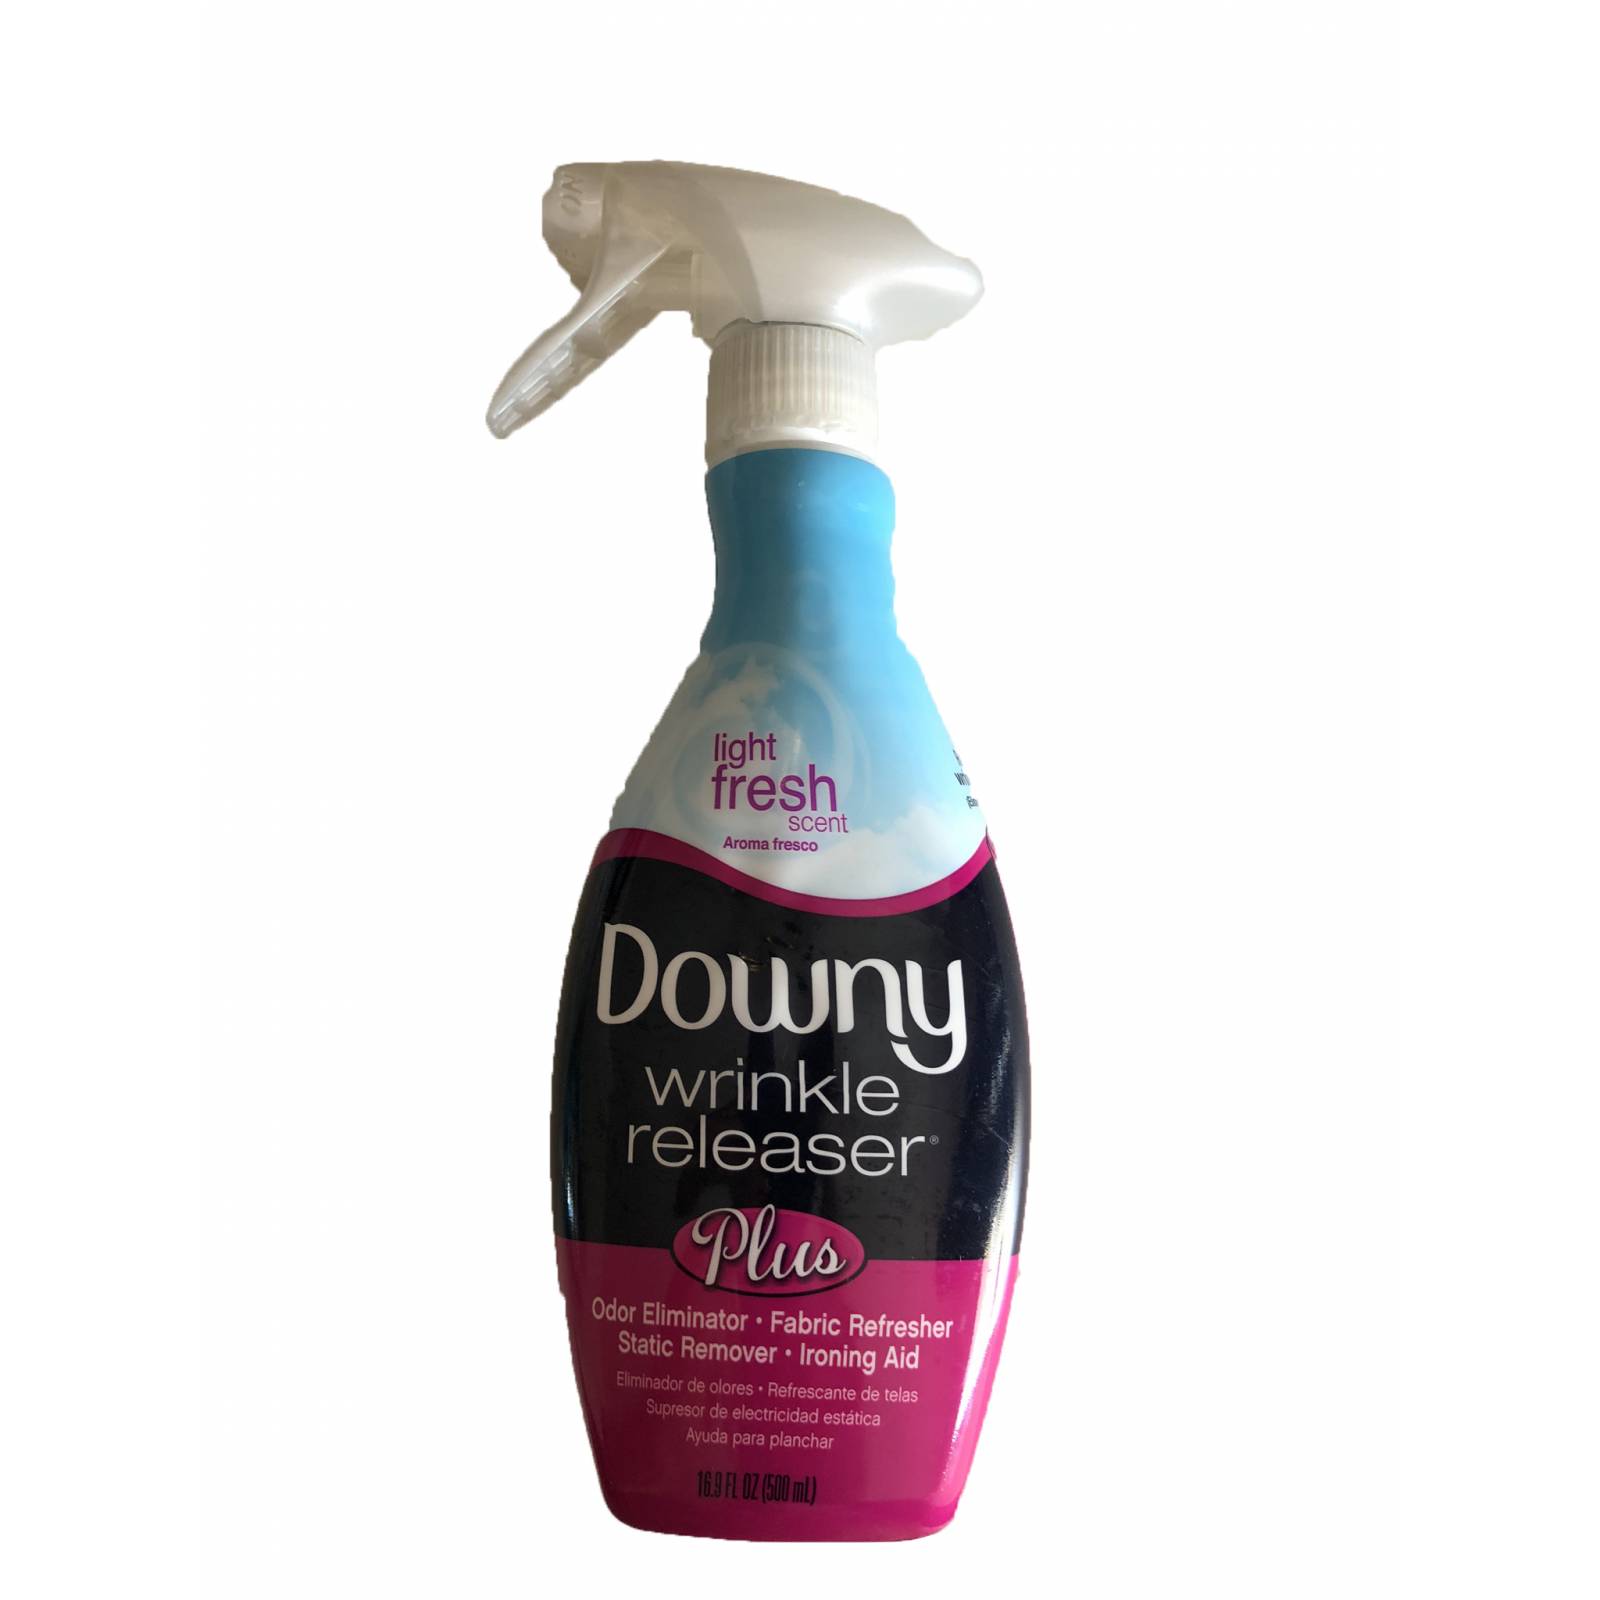 Downy Eliminador de arrugas y malos olores en telas y ropa, ayuda a un planchado más eficaz. 500 ml.